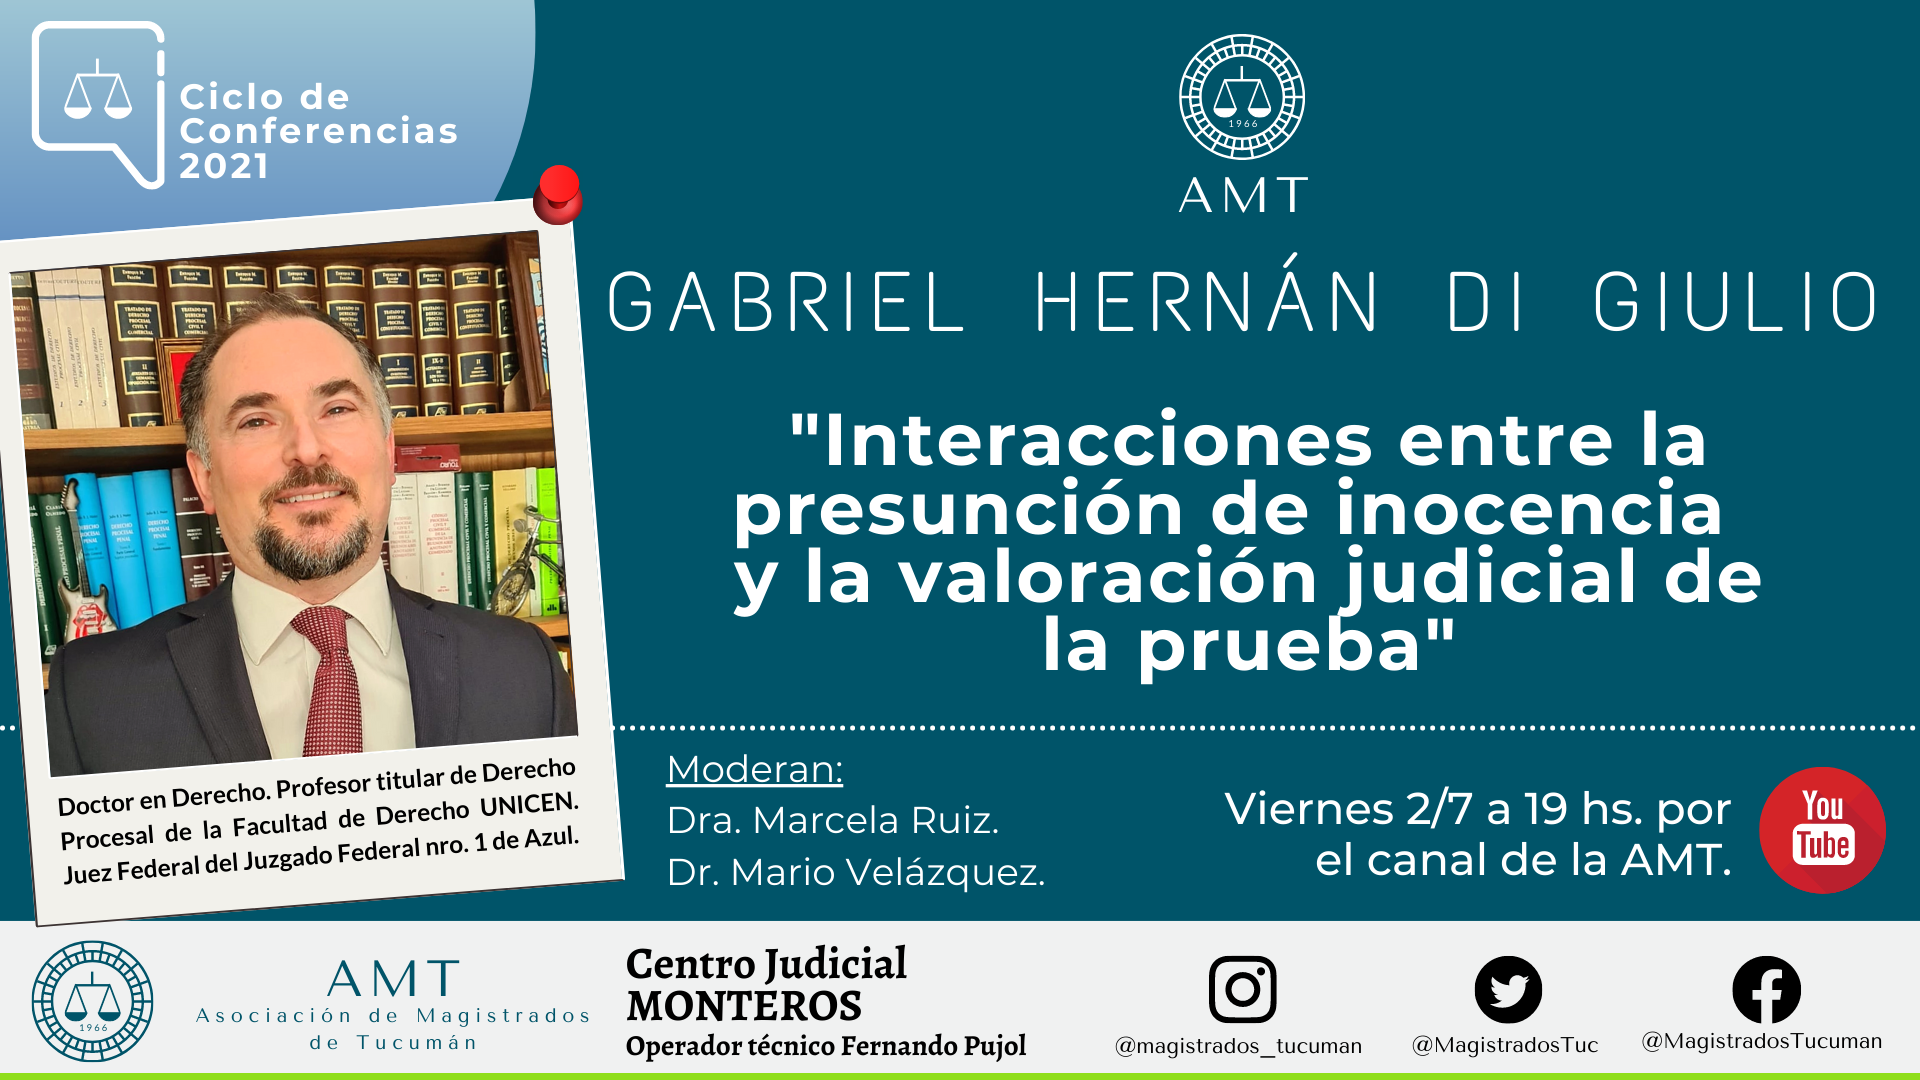 Vuelva a ver la conferencia de Gabriel Hernán Di Giulio  «Interacciones entre la presunción de inocencia y la valoración judicial de la prueba»